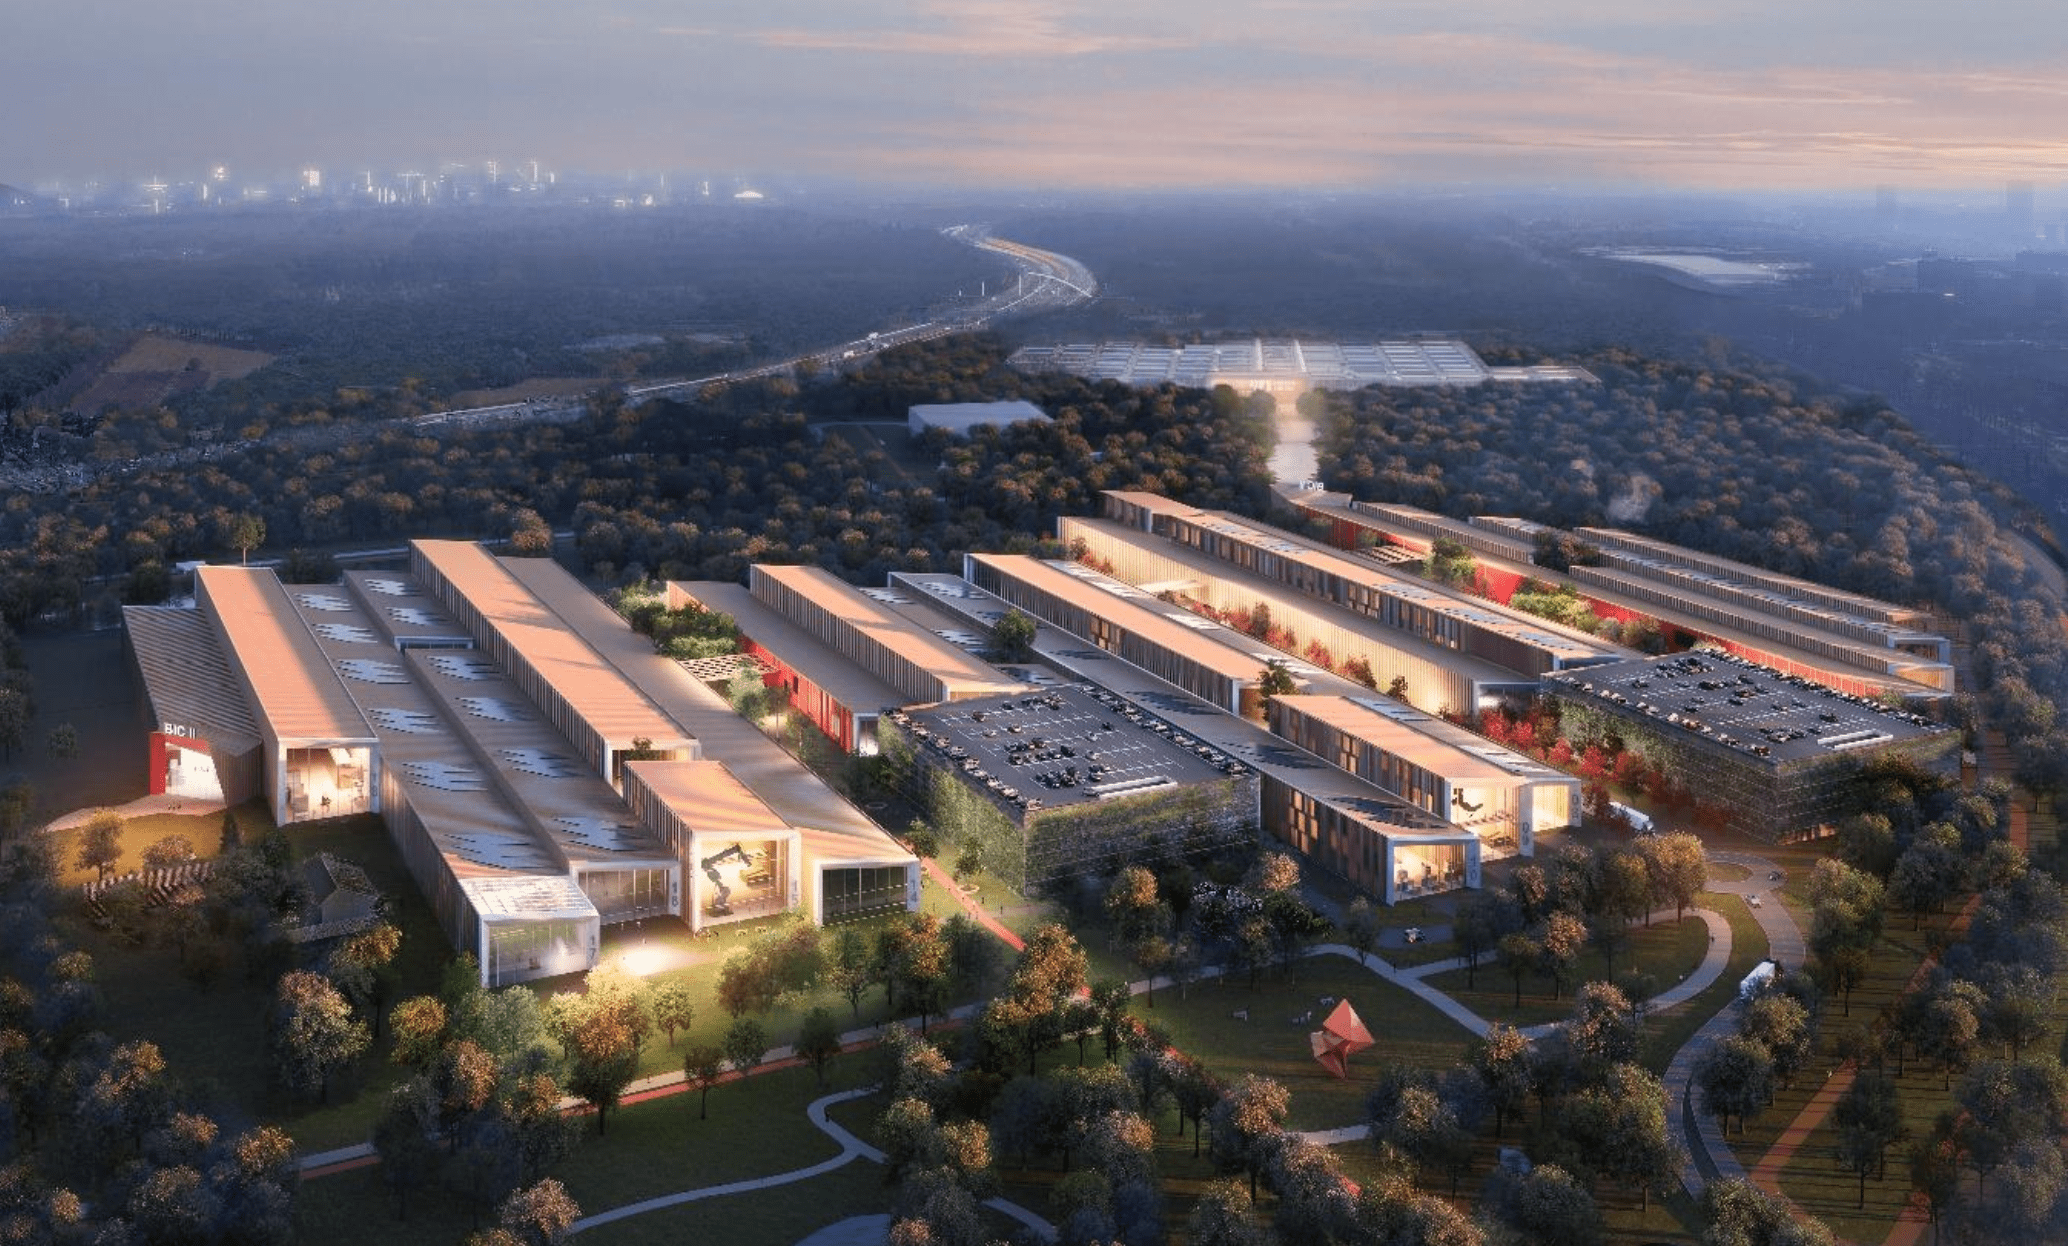 Bouwstart van tweede fase van Brainport Industries Campus gepland voor 2025